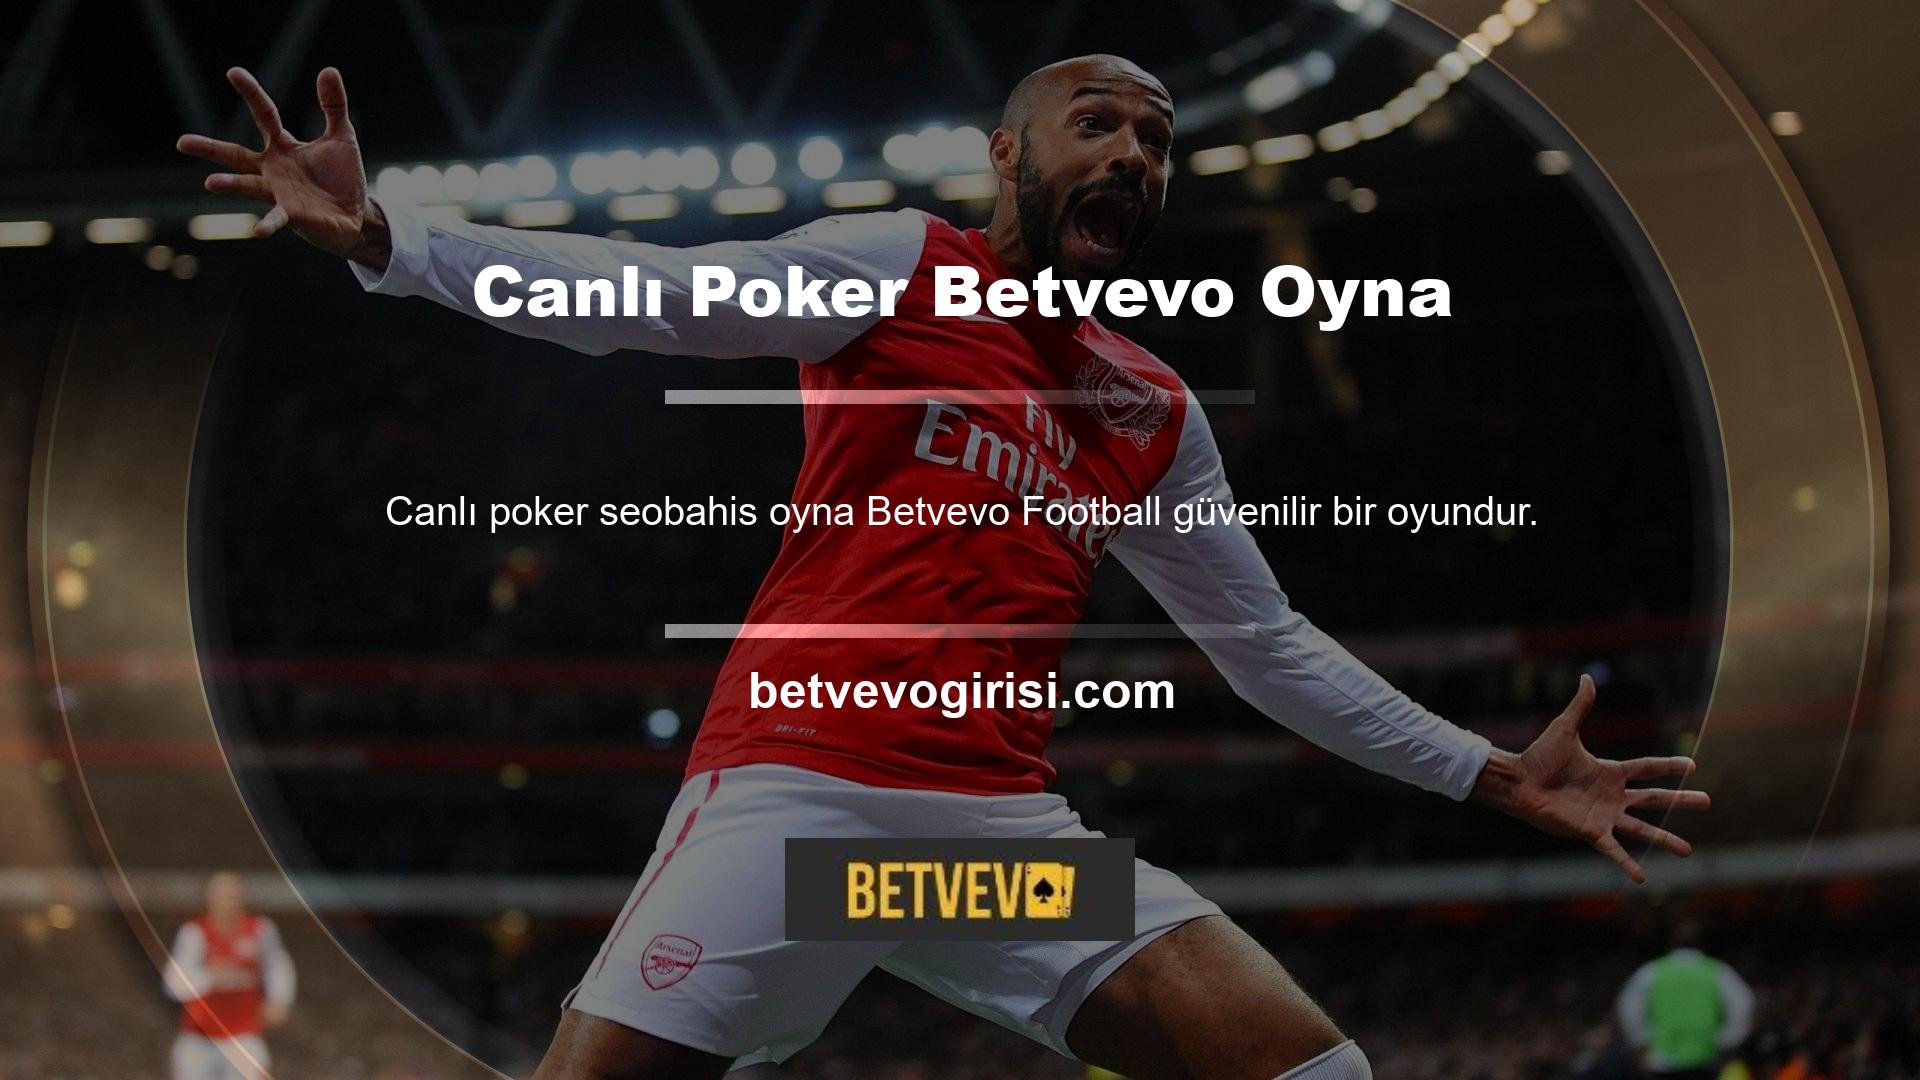 Betvevo Canlı Poker oynayın ve futbol bahis sitelerinde güvenilir şekilde bahis yapın